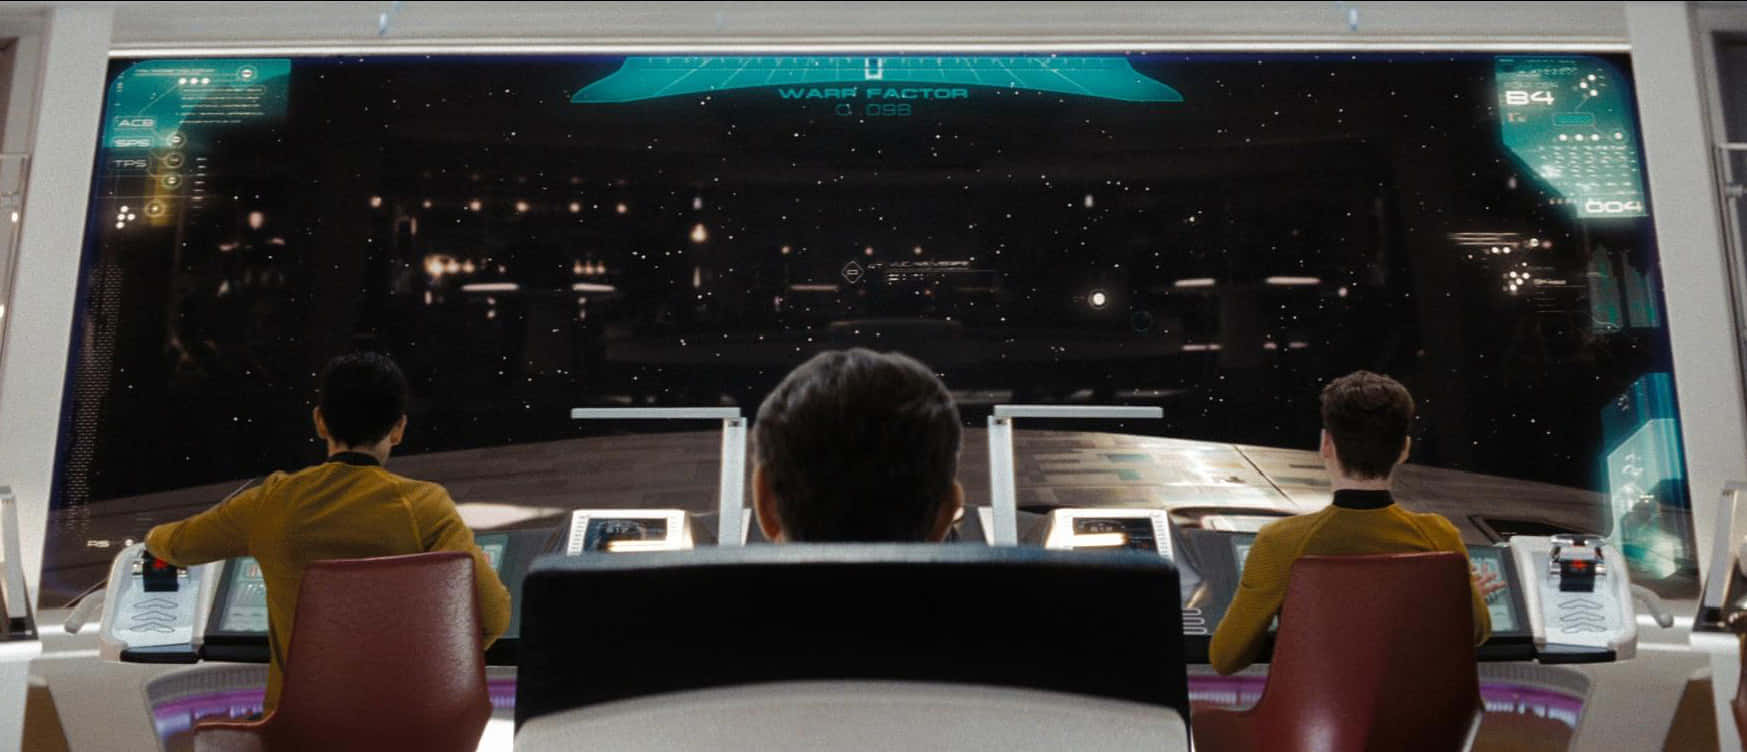 Star Trek Enterprise Bridge 2009 Film Wallpaper